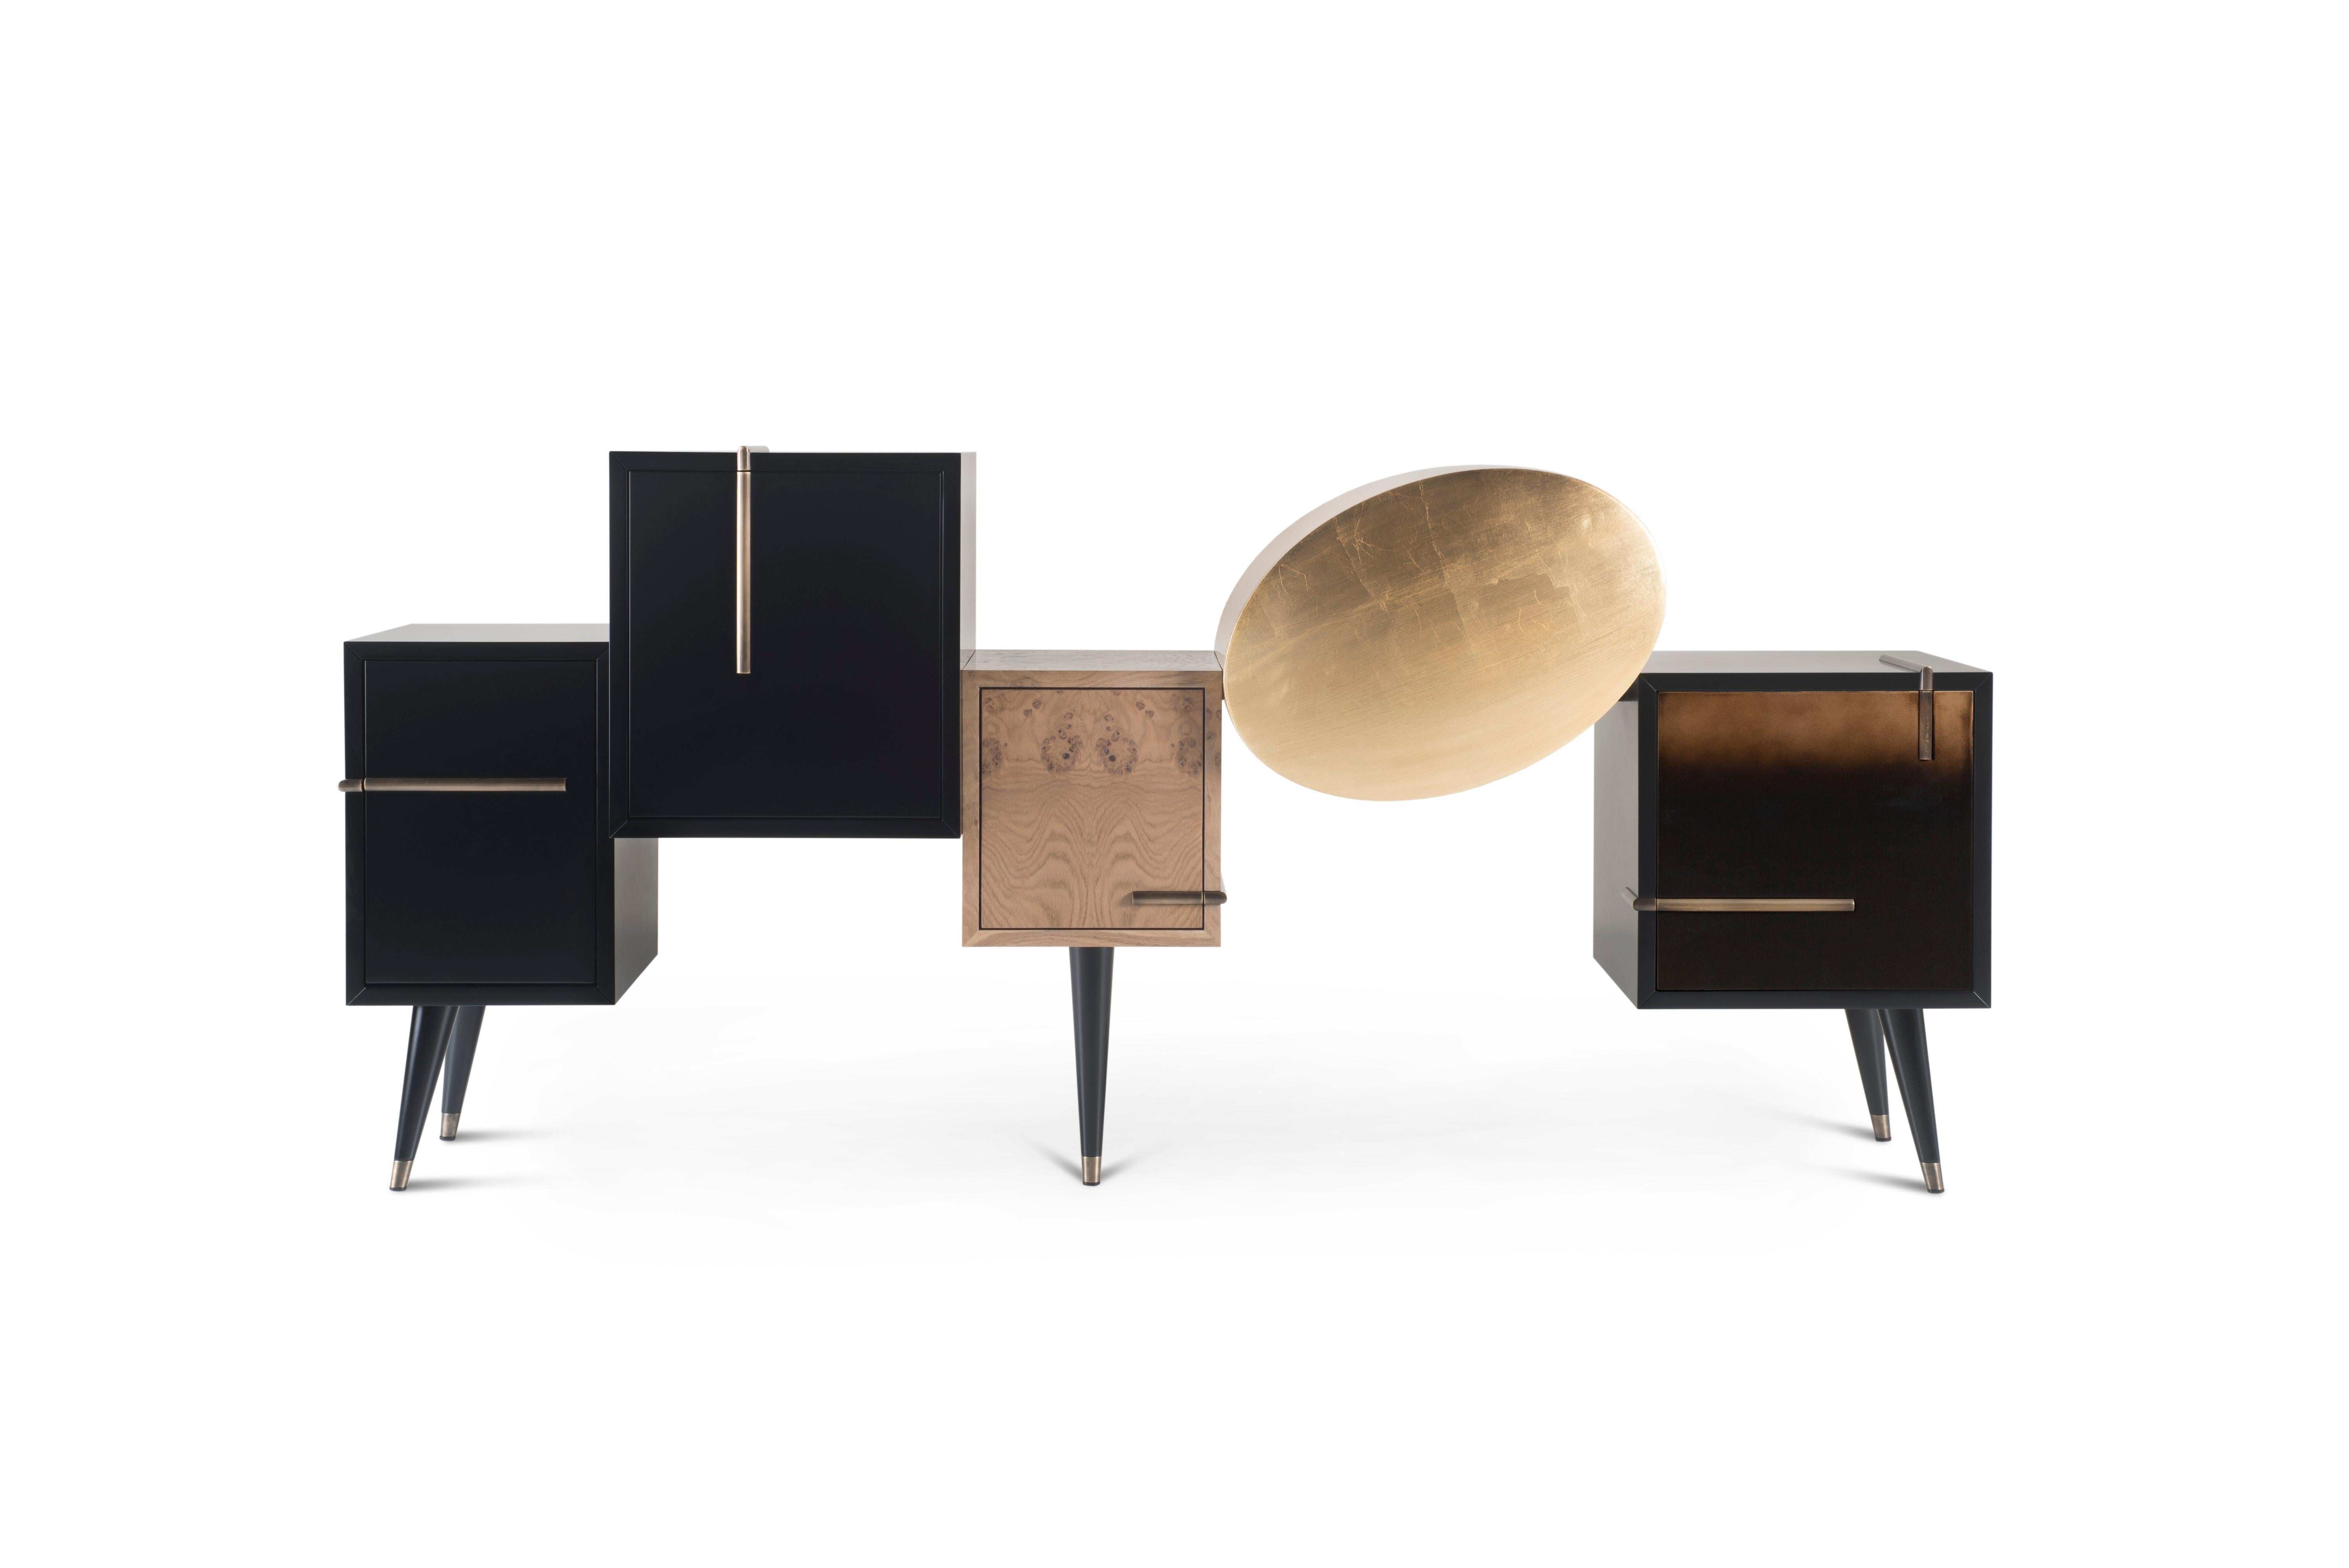 Sunshine Sideboard, Collection'S Contemporary, handgefertigt in Portugal - Europa von Greenapple.

Das moderne Sideboard Sunshine spielt mit Licht und Schatten geometrischer Formen und präsentiert ein einzigartiges und unverwechselbares Design für